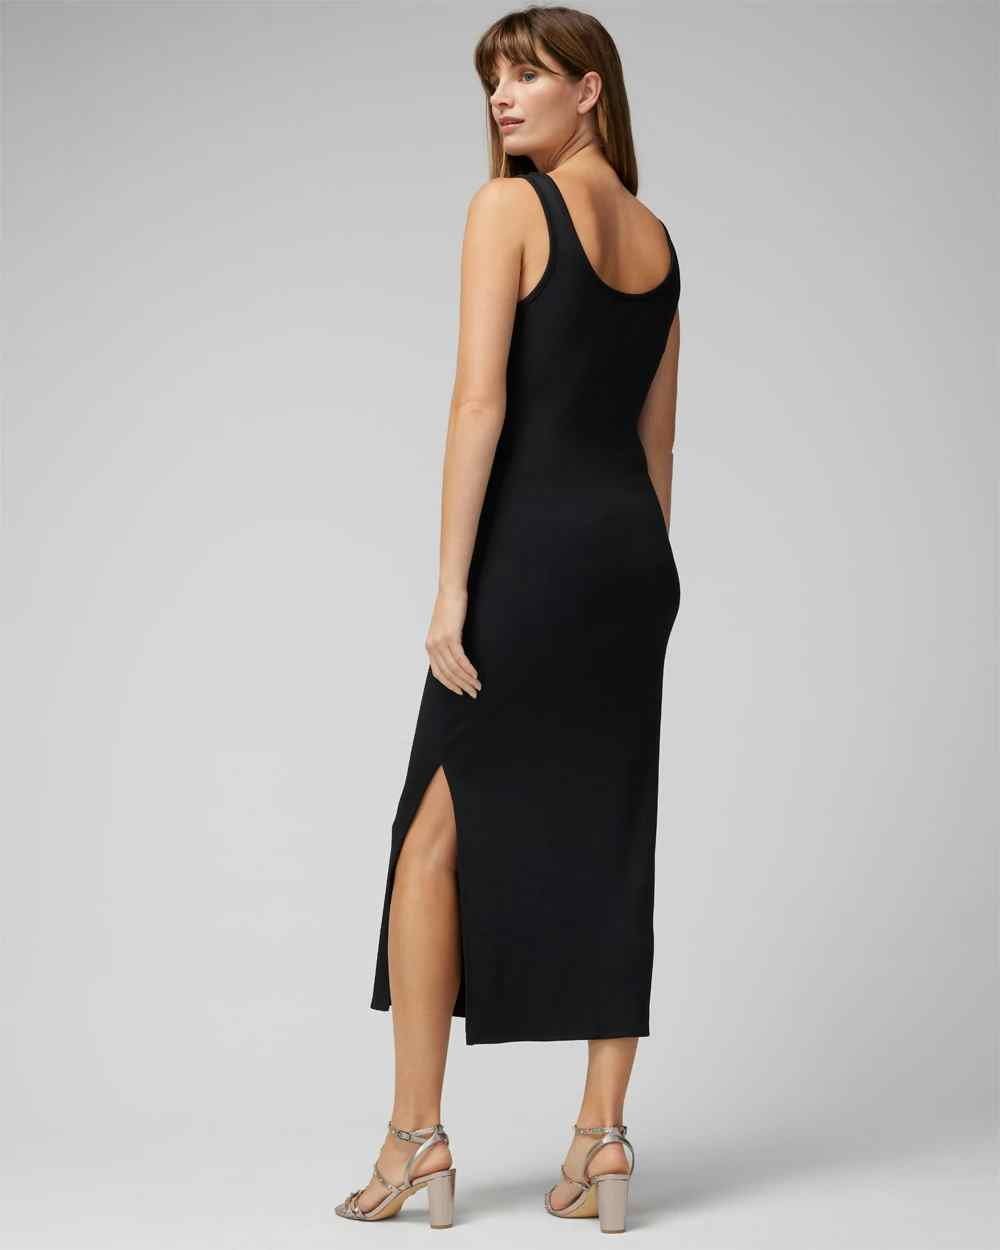 Shop Little Black Dresses for Fall | White House Black Market